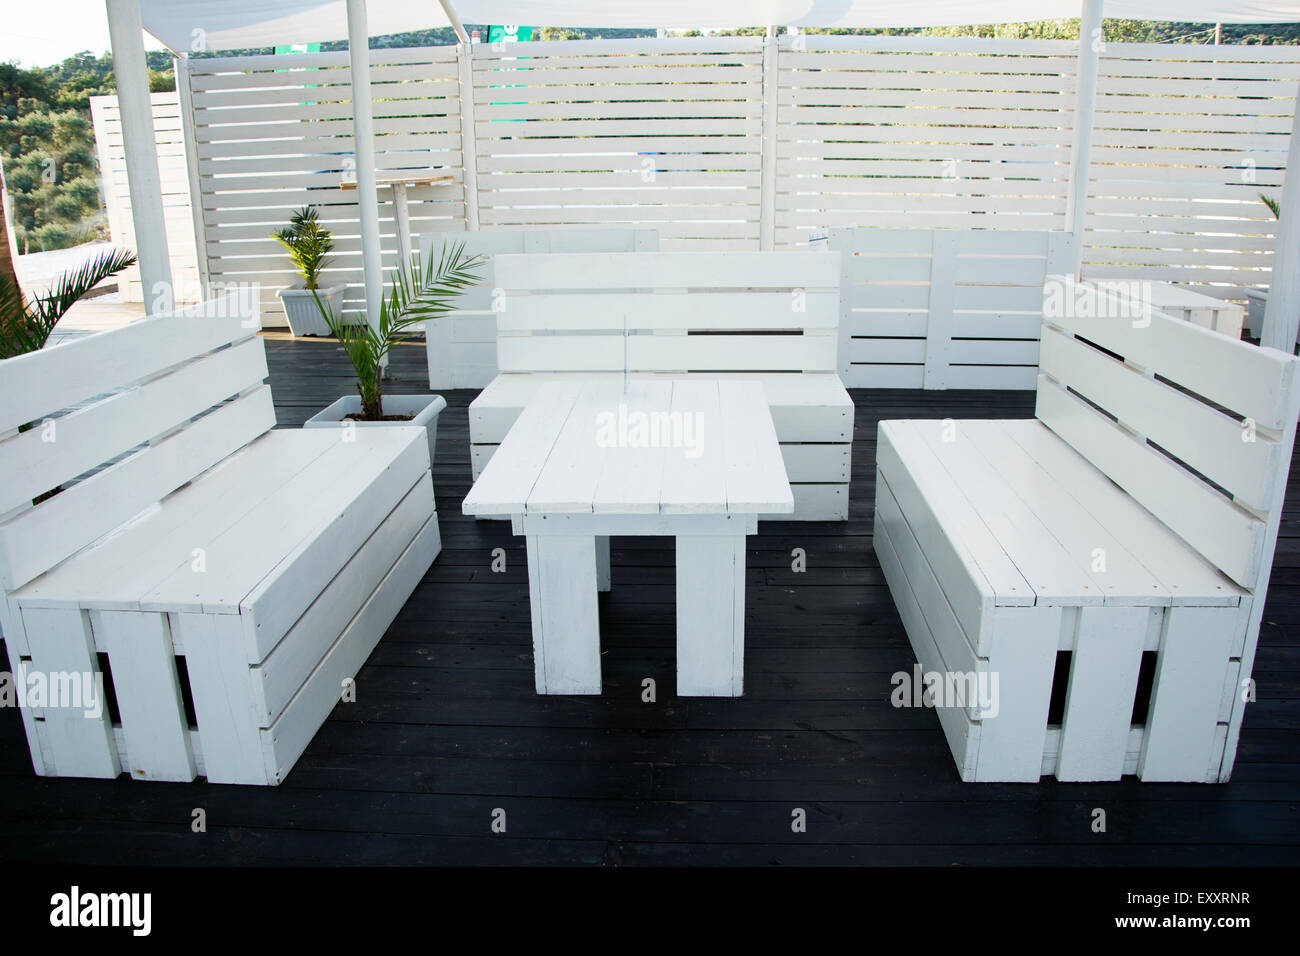 Paletas industriales muebles pintados en blanco para el bar de la playa,fantástica idea. Foto de stock